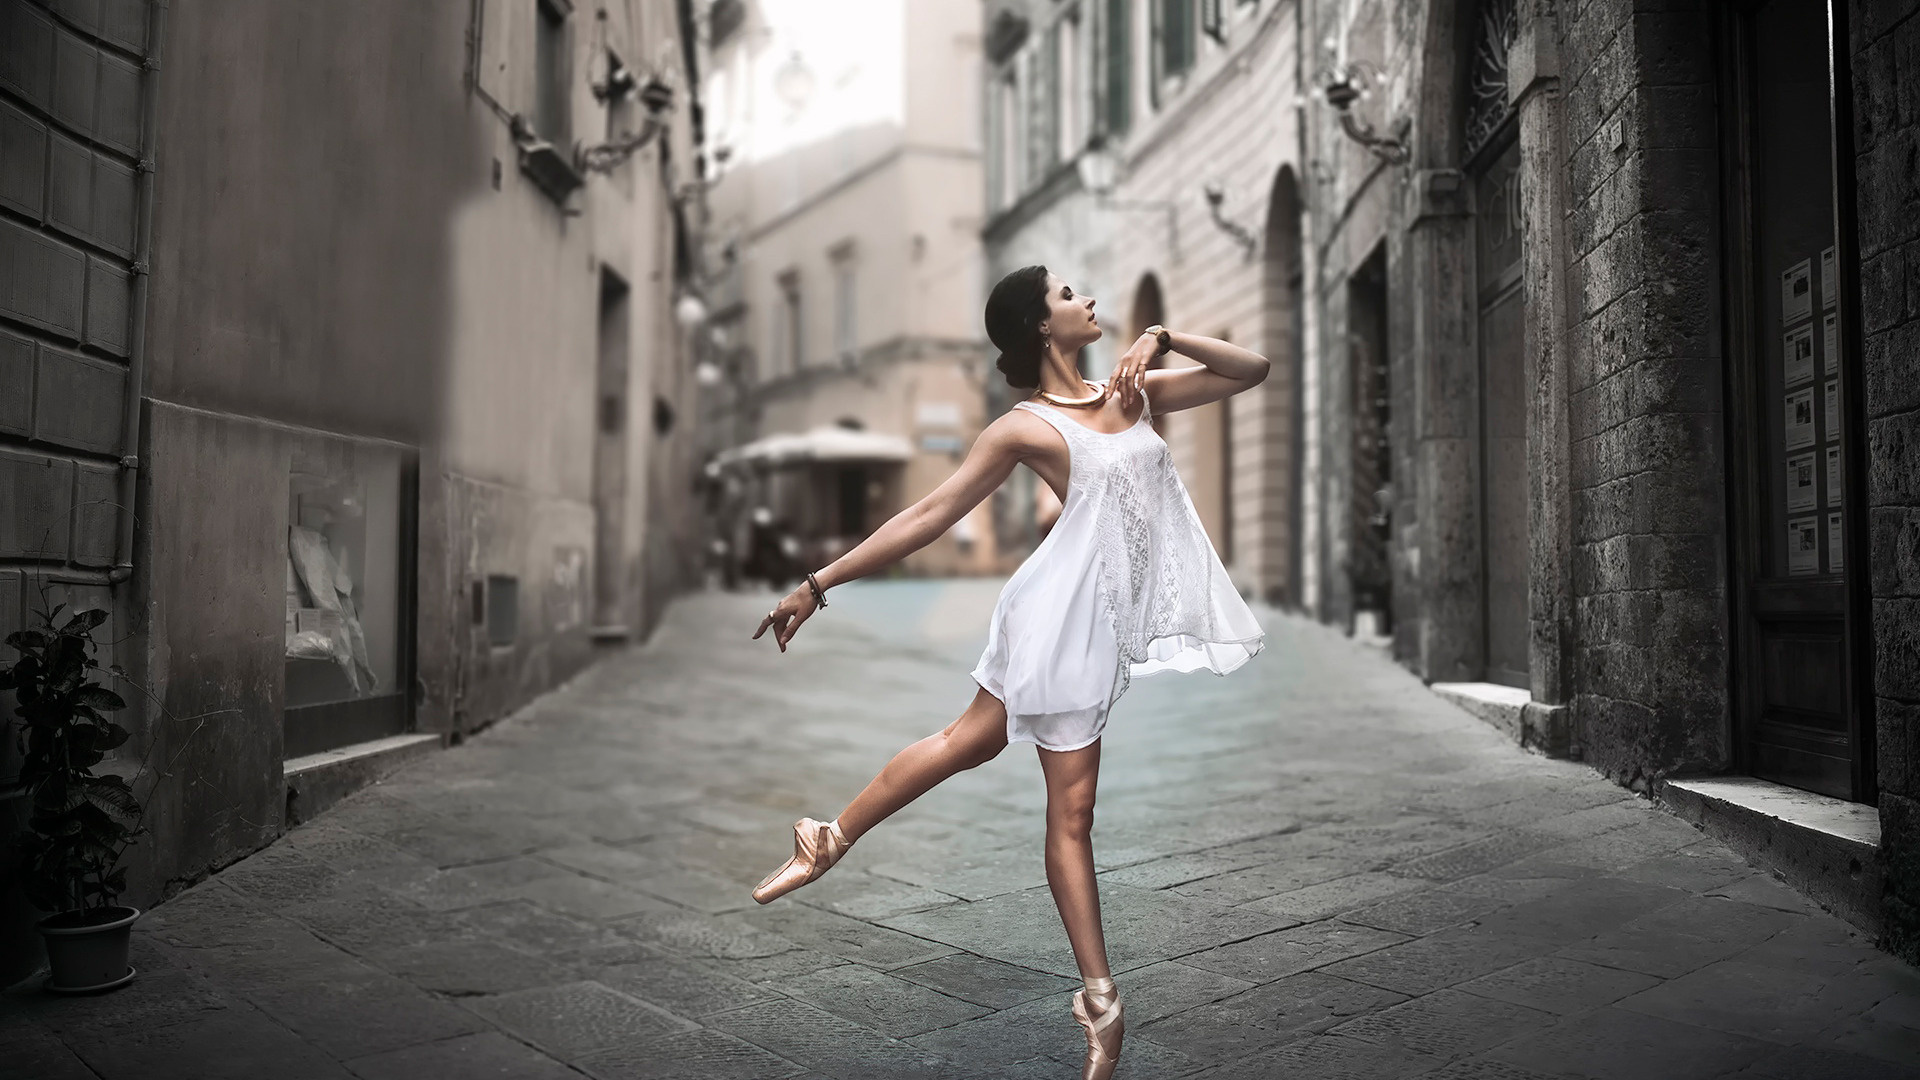 City street dance, Ballet pointe shoes, Girls in motion, Vibrant wallpaper, 1920x1080 Full HD Desktop